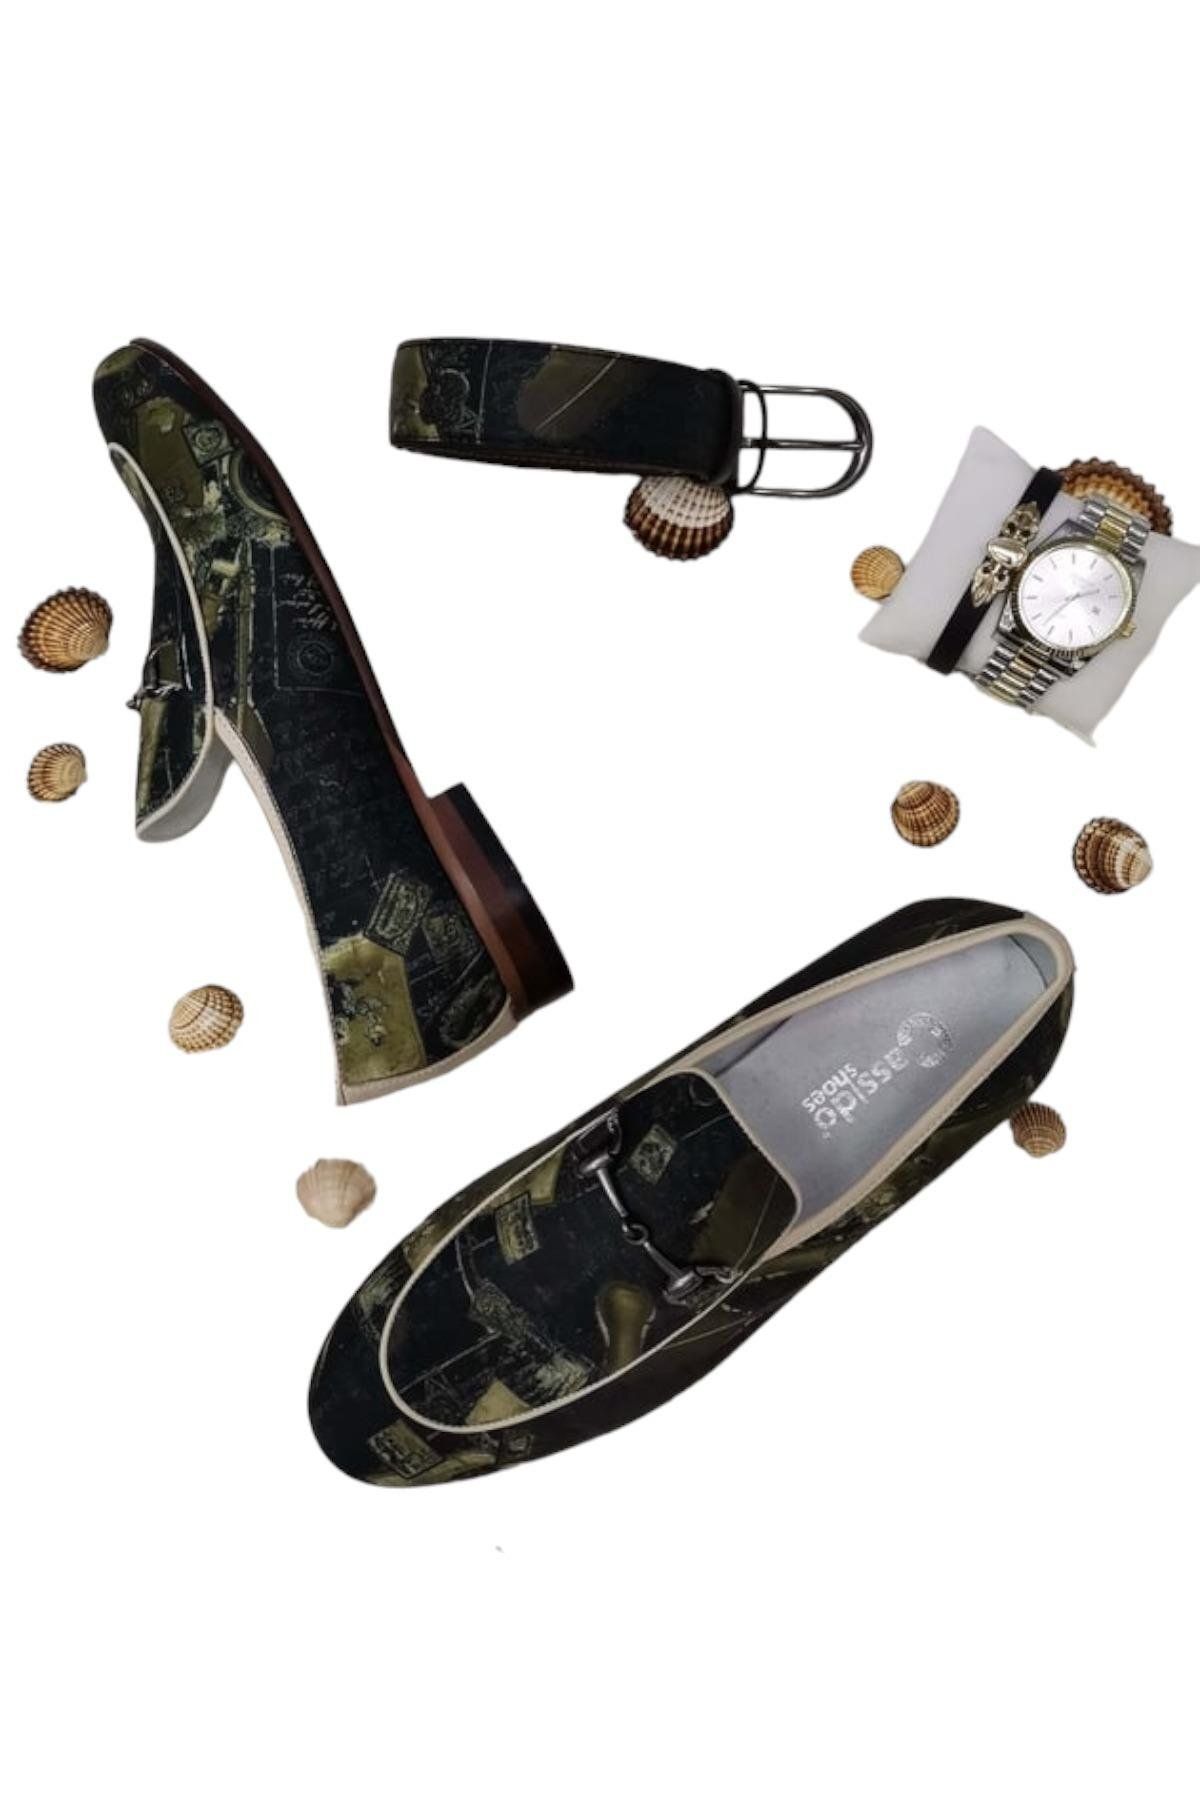 CassidoShoes Hakiki Deri Özel Tasarım Renkli Keten Ayakkabı Kemer Hediyeli 022-3244